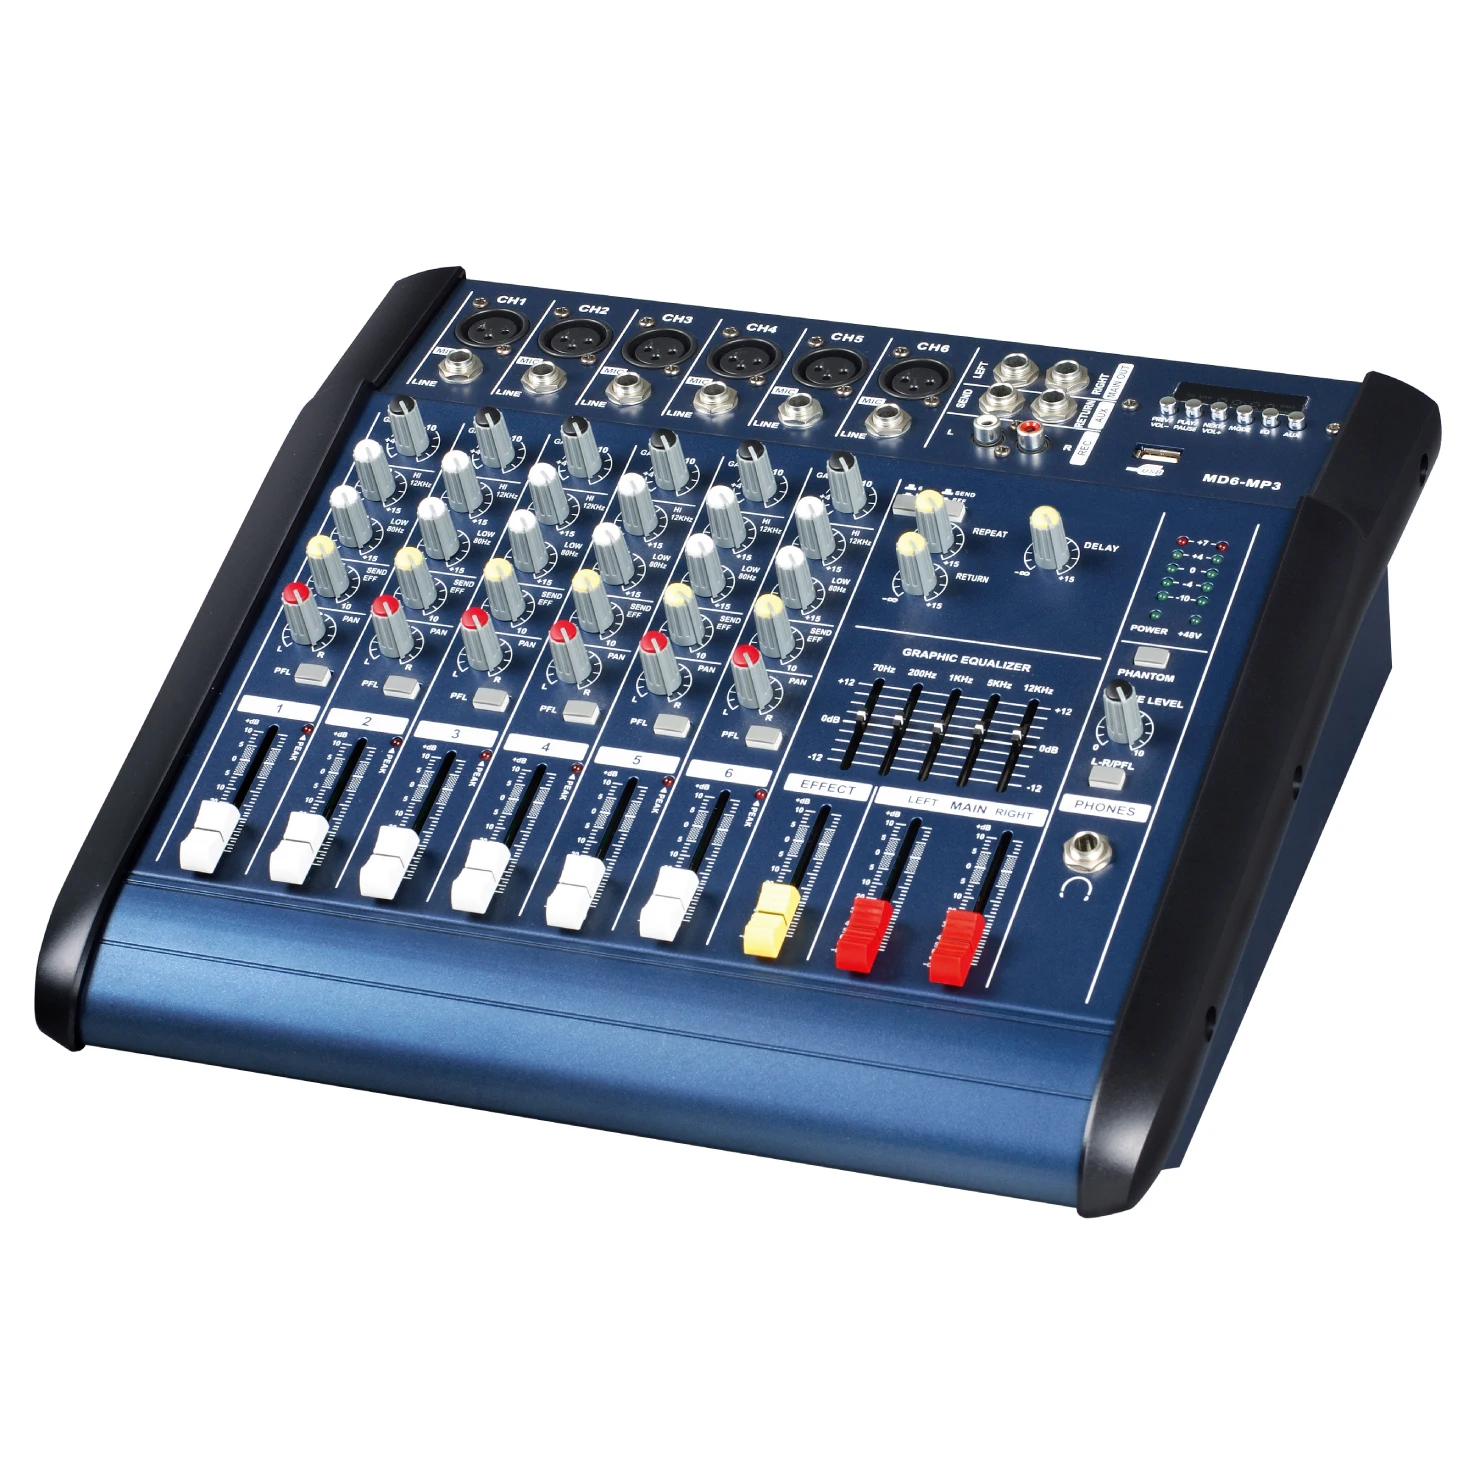 Ledningsevne Playful bodsøvelser Source Professional OEM DJ Sound System Digital Music Audio Video Max Power  Mixer Console on m.alibaba.com